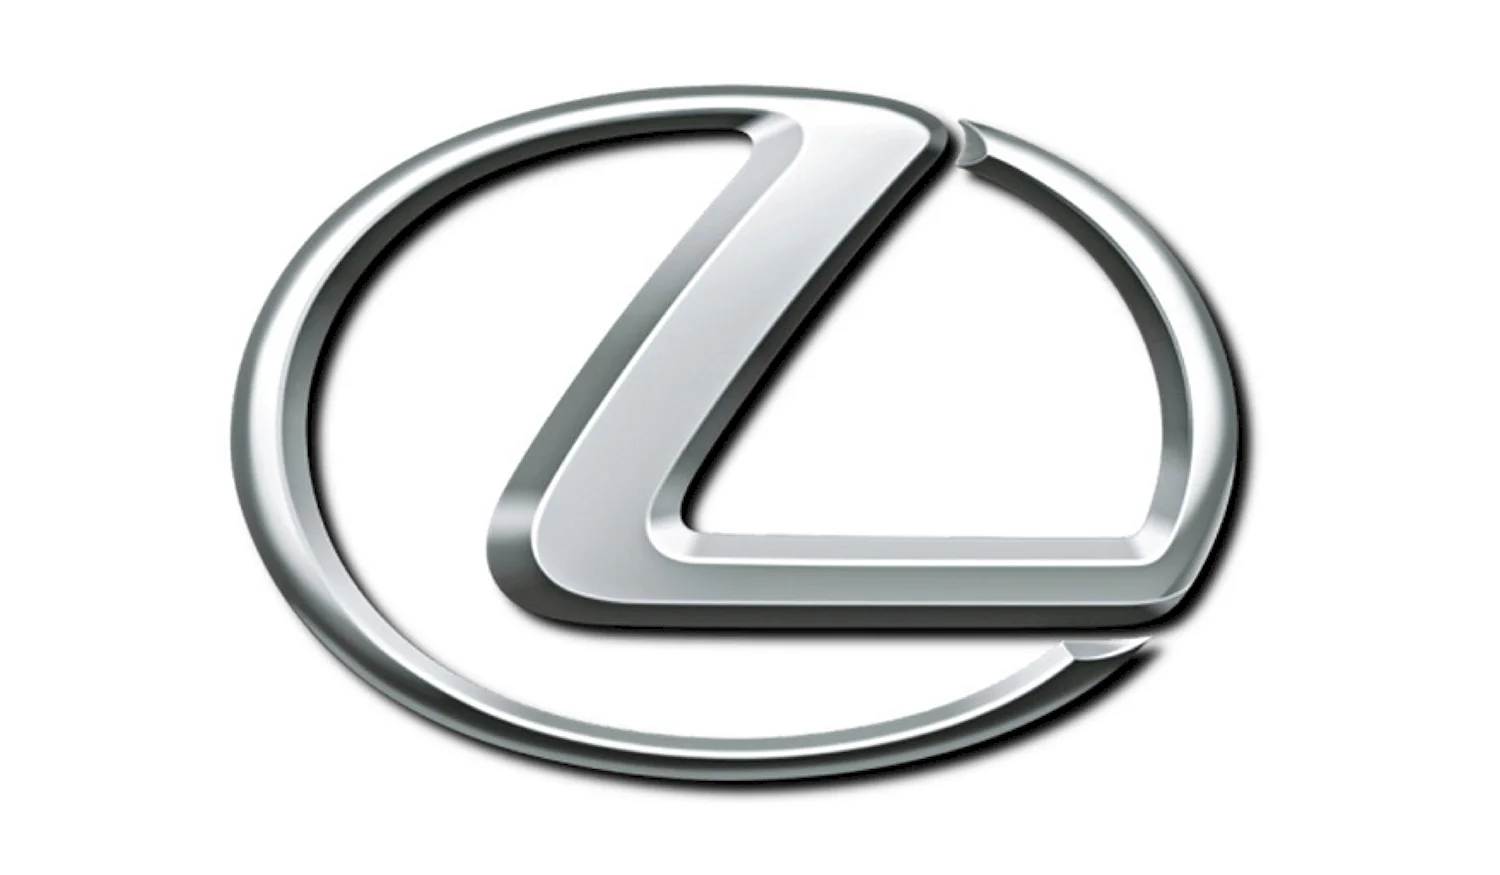 Lexus значок